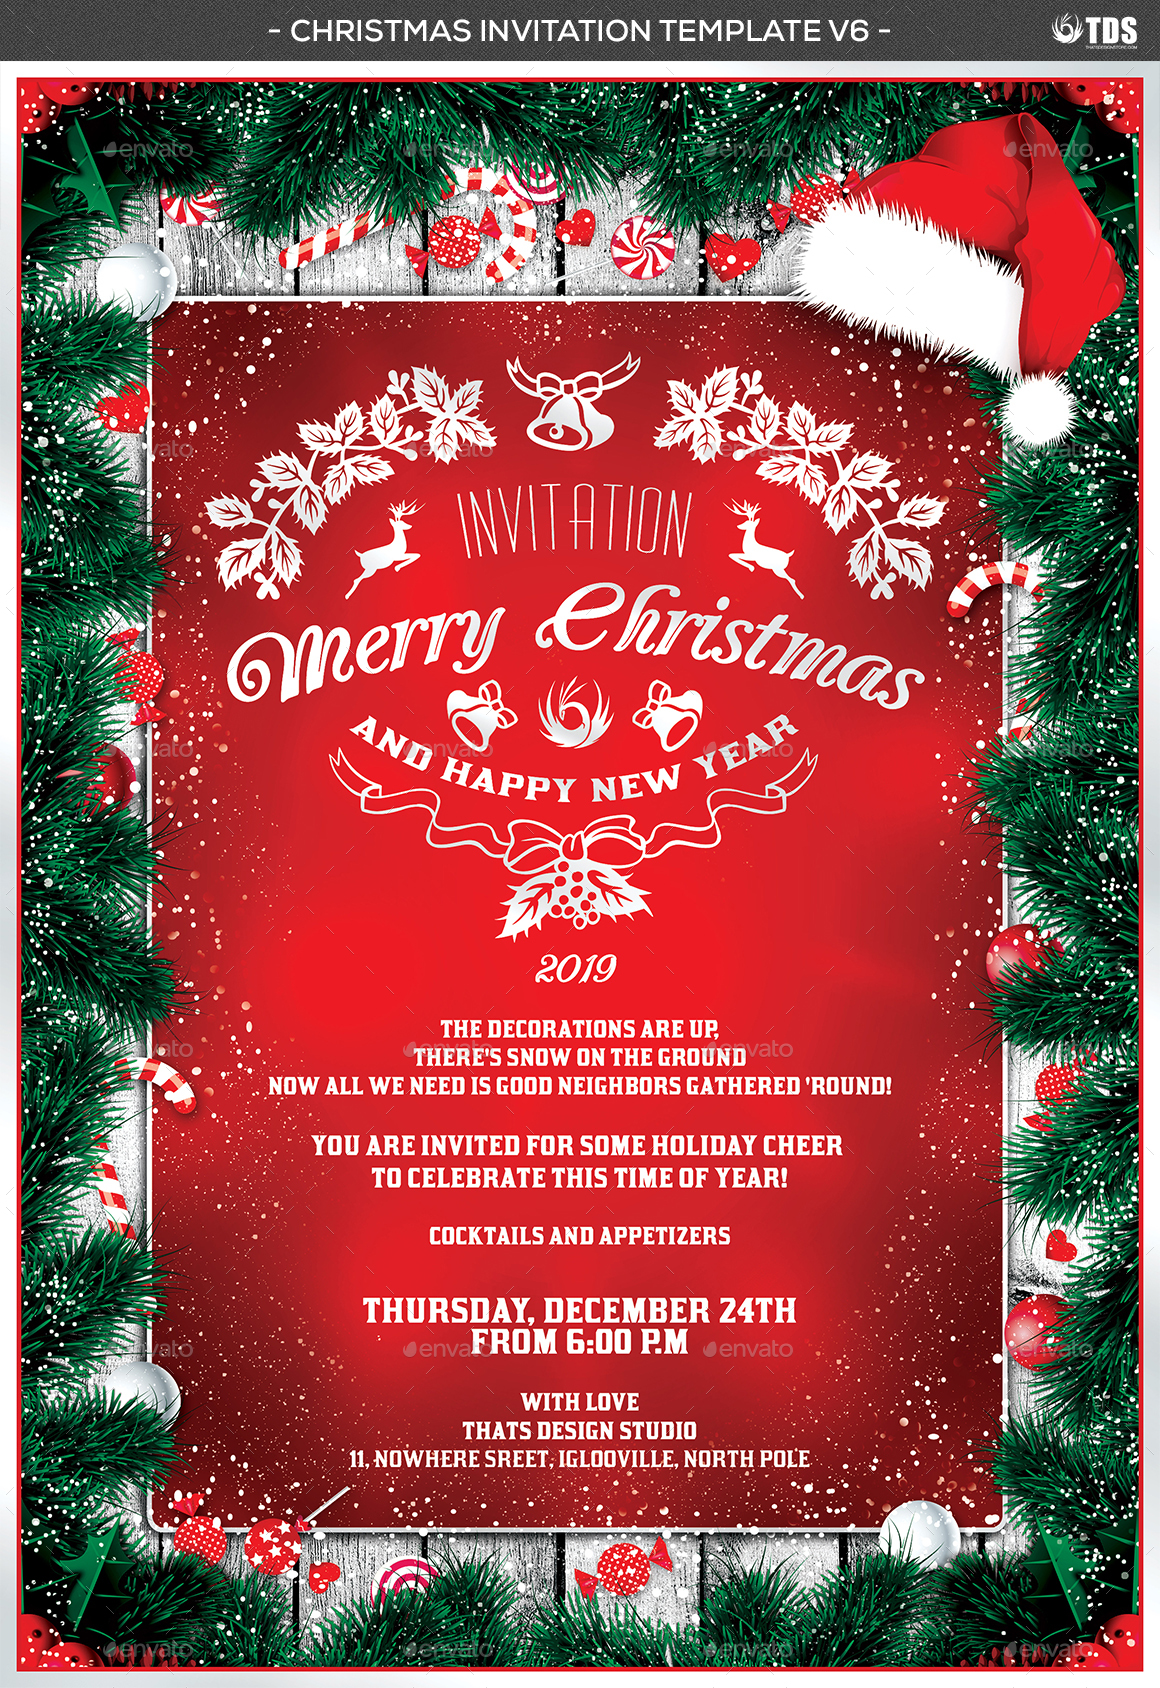 Christmas Invitation Template V6 by lou606 | GraphicRiver